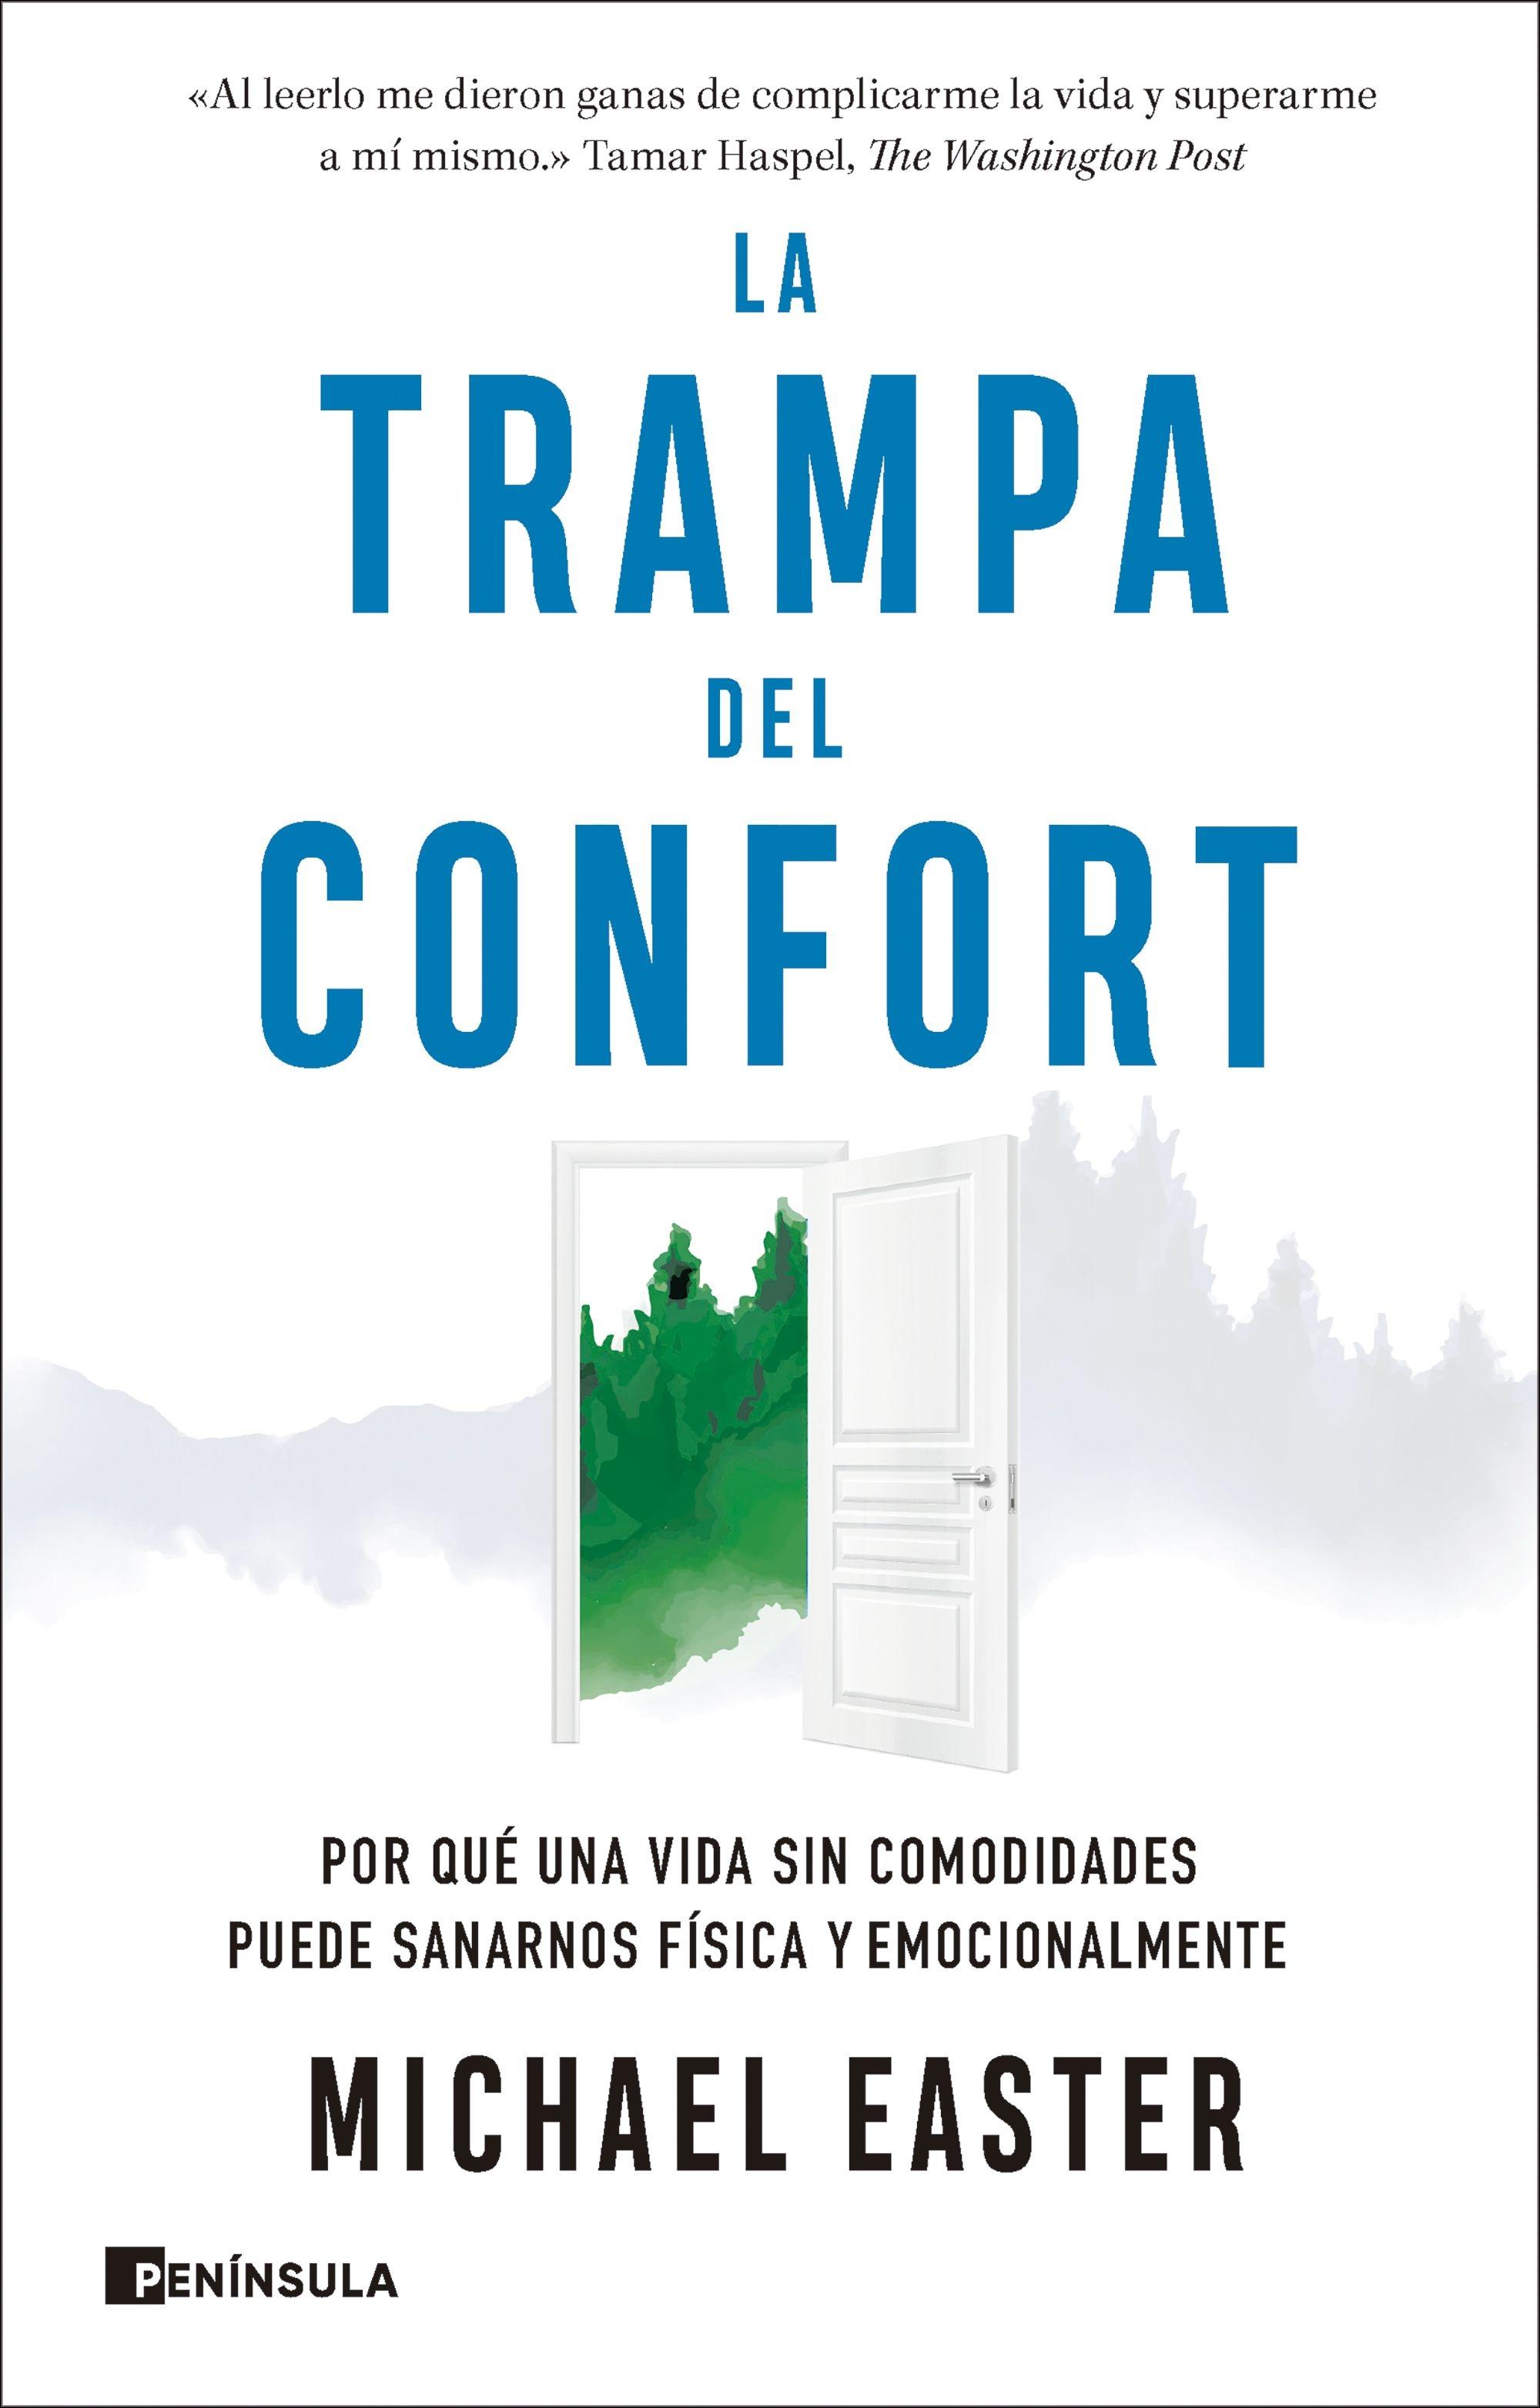 La Trampa del Confort "Por que una Vida sin Comodidades Puede Sanarnos Física y Emocionalmente". 